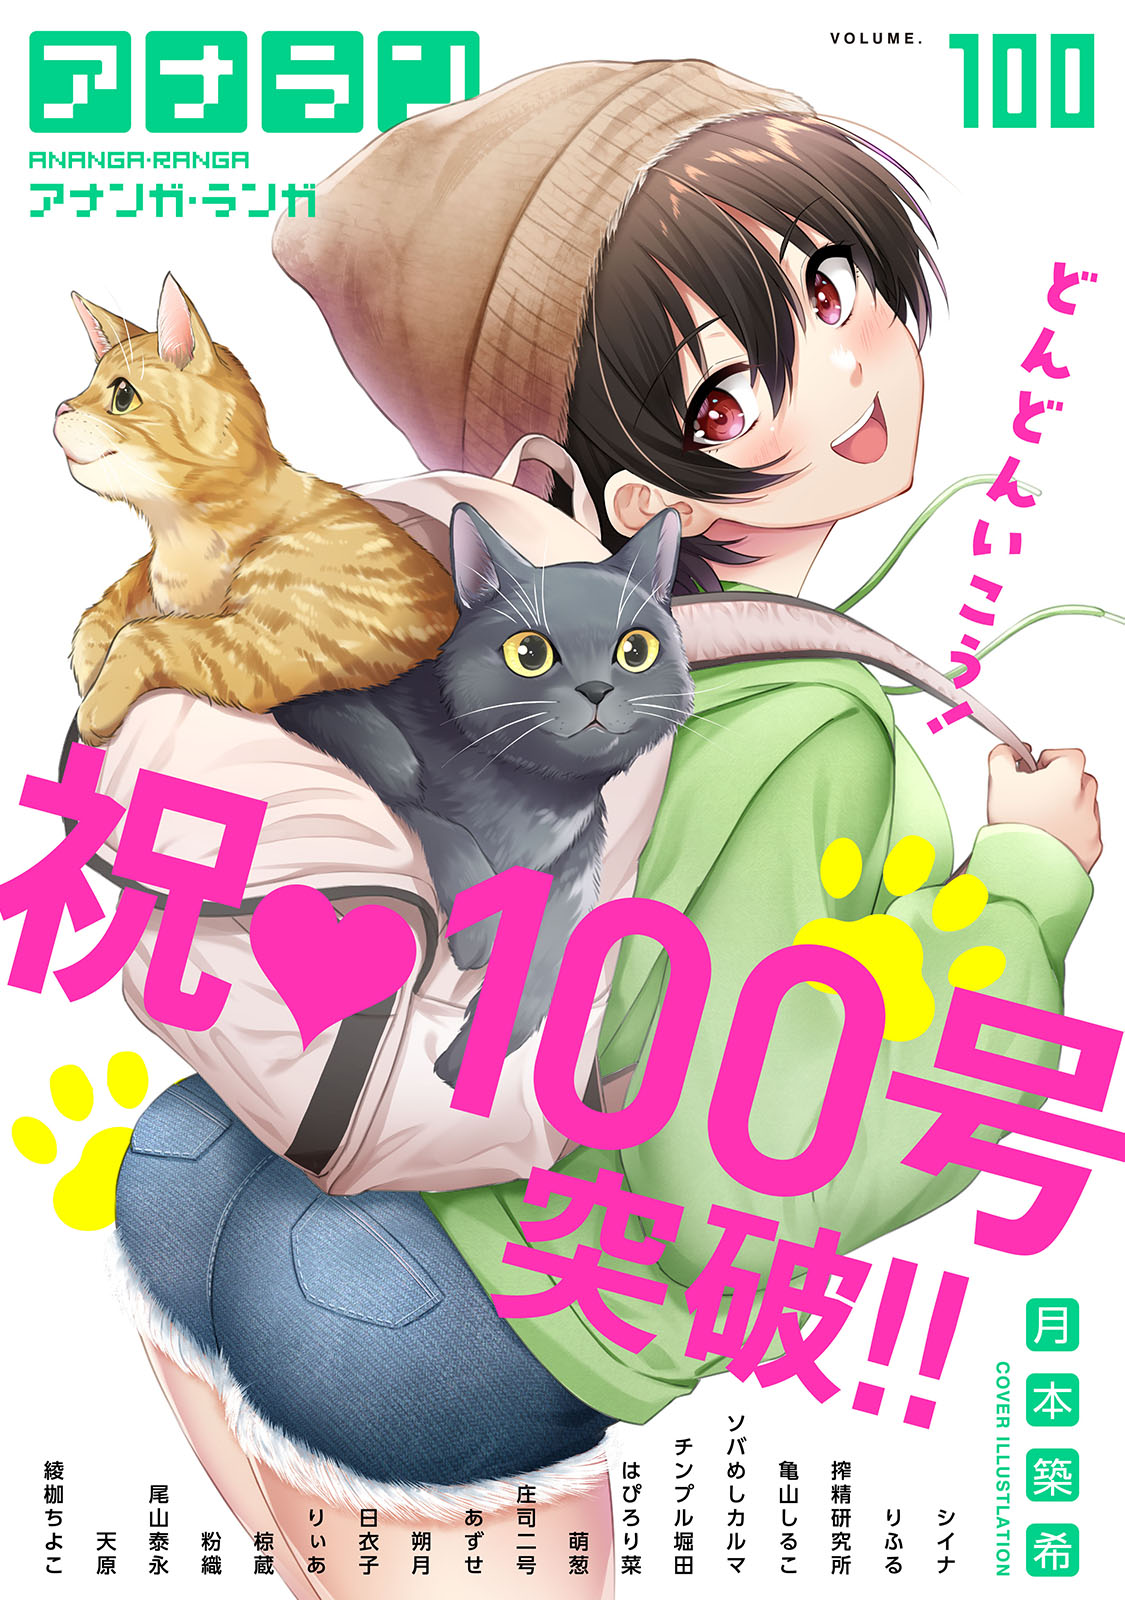 アナンガ・ランガ Vol.100(マンガ) - 電子書籍 | U-NEXT 初回600円分無料